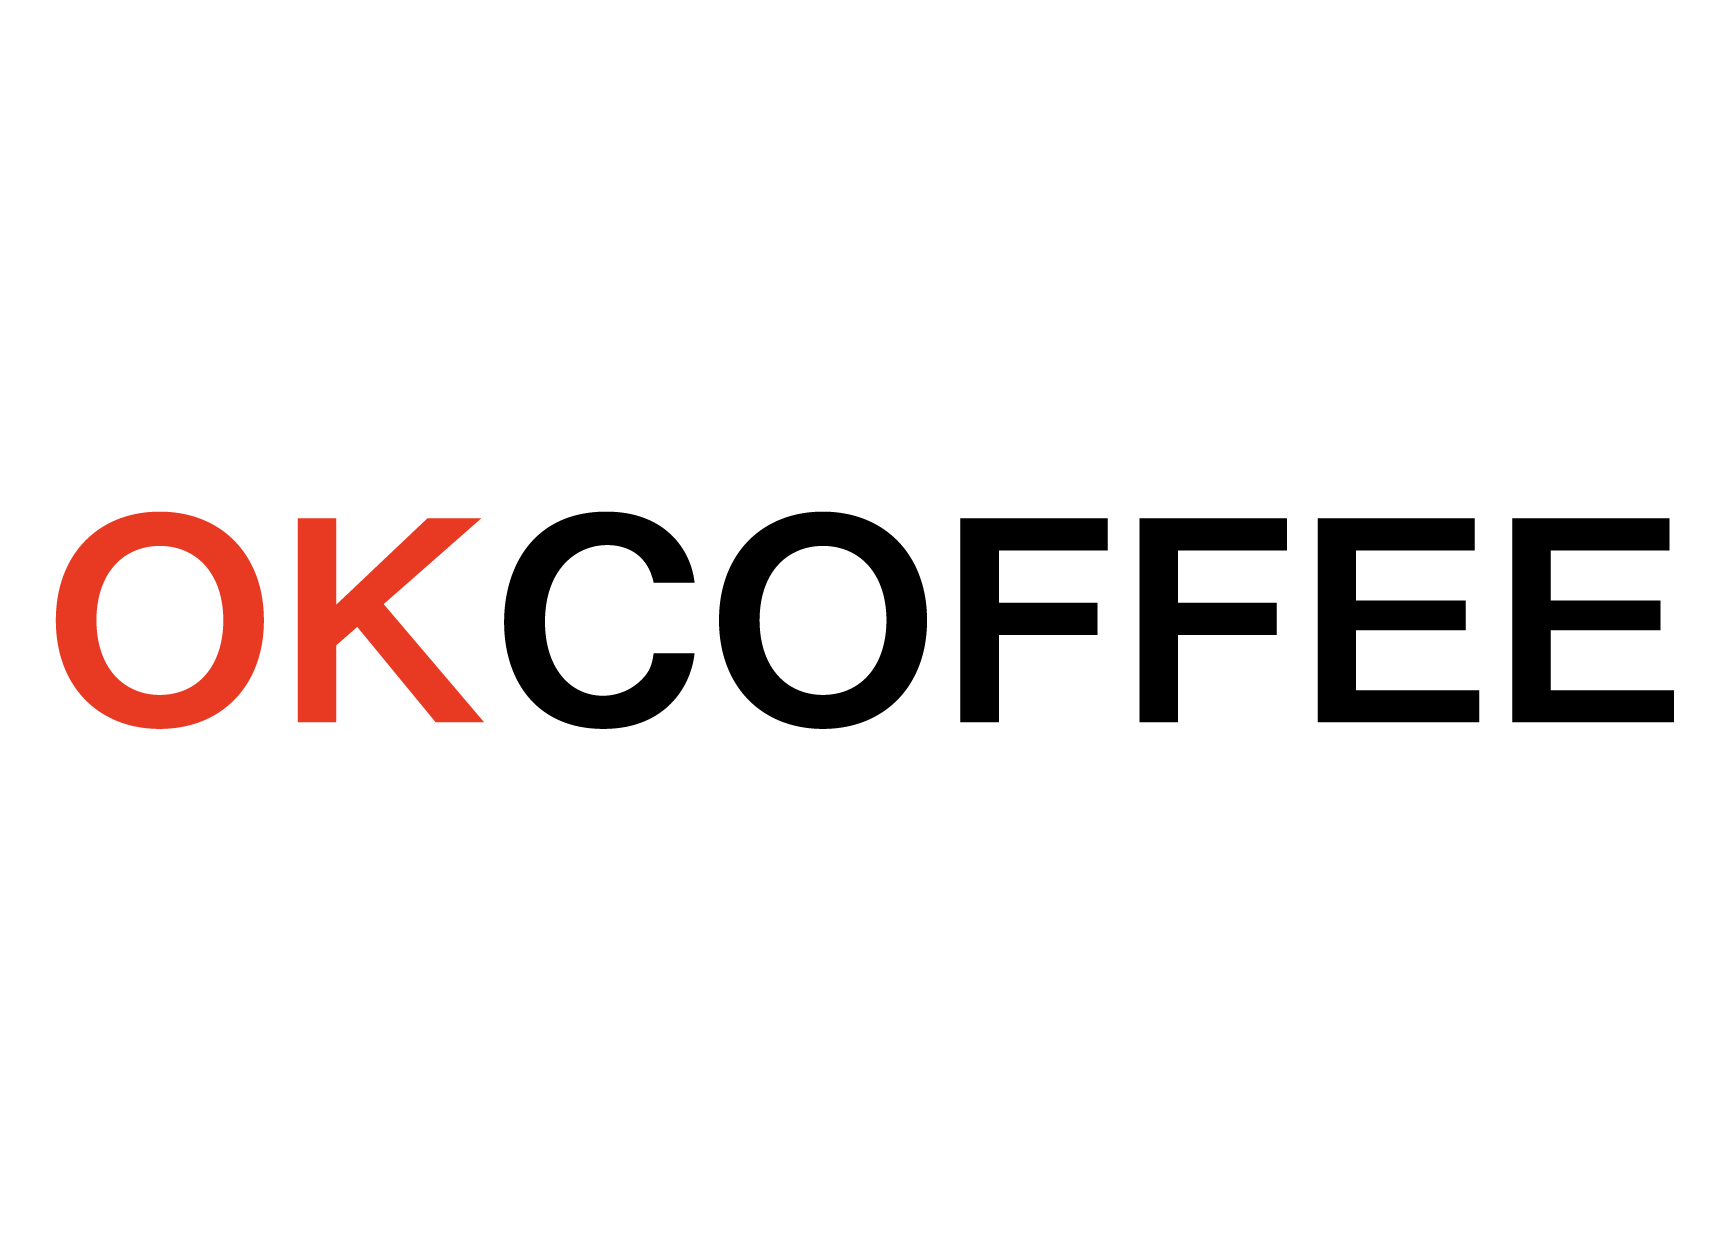 OK COFFEE – OKCOFFEE